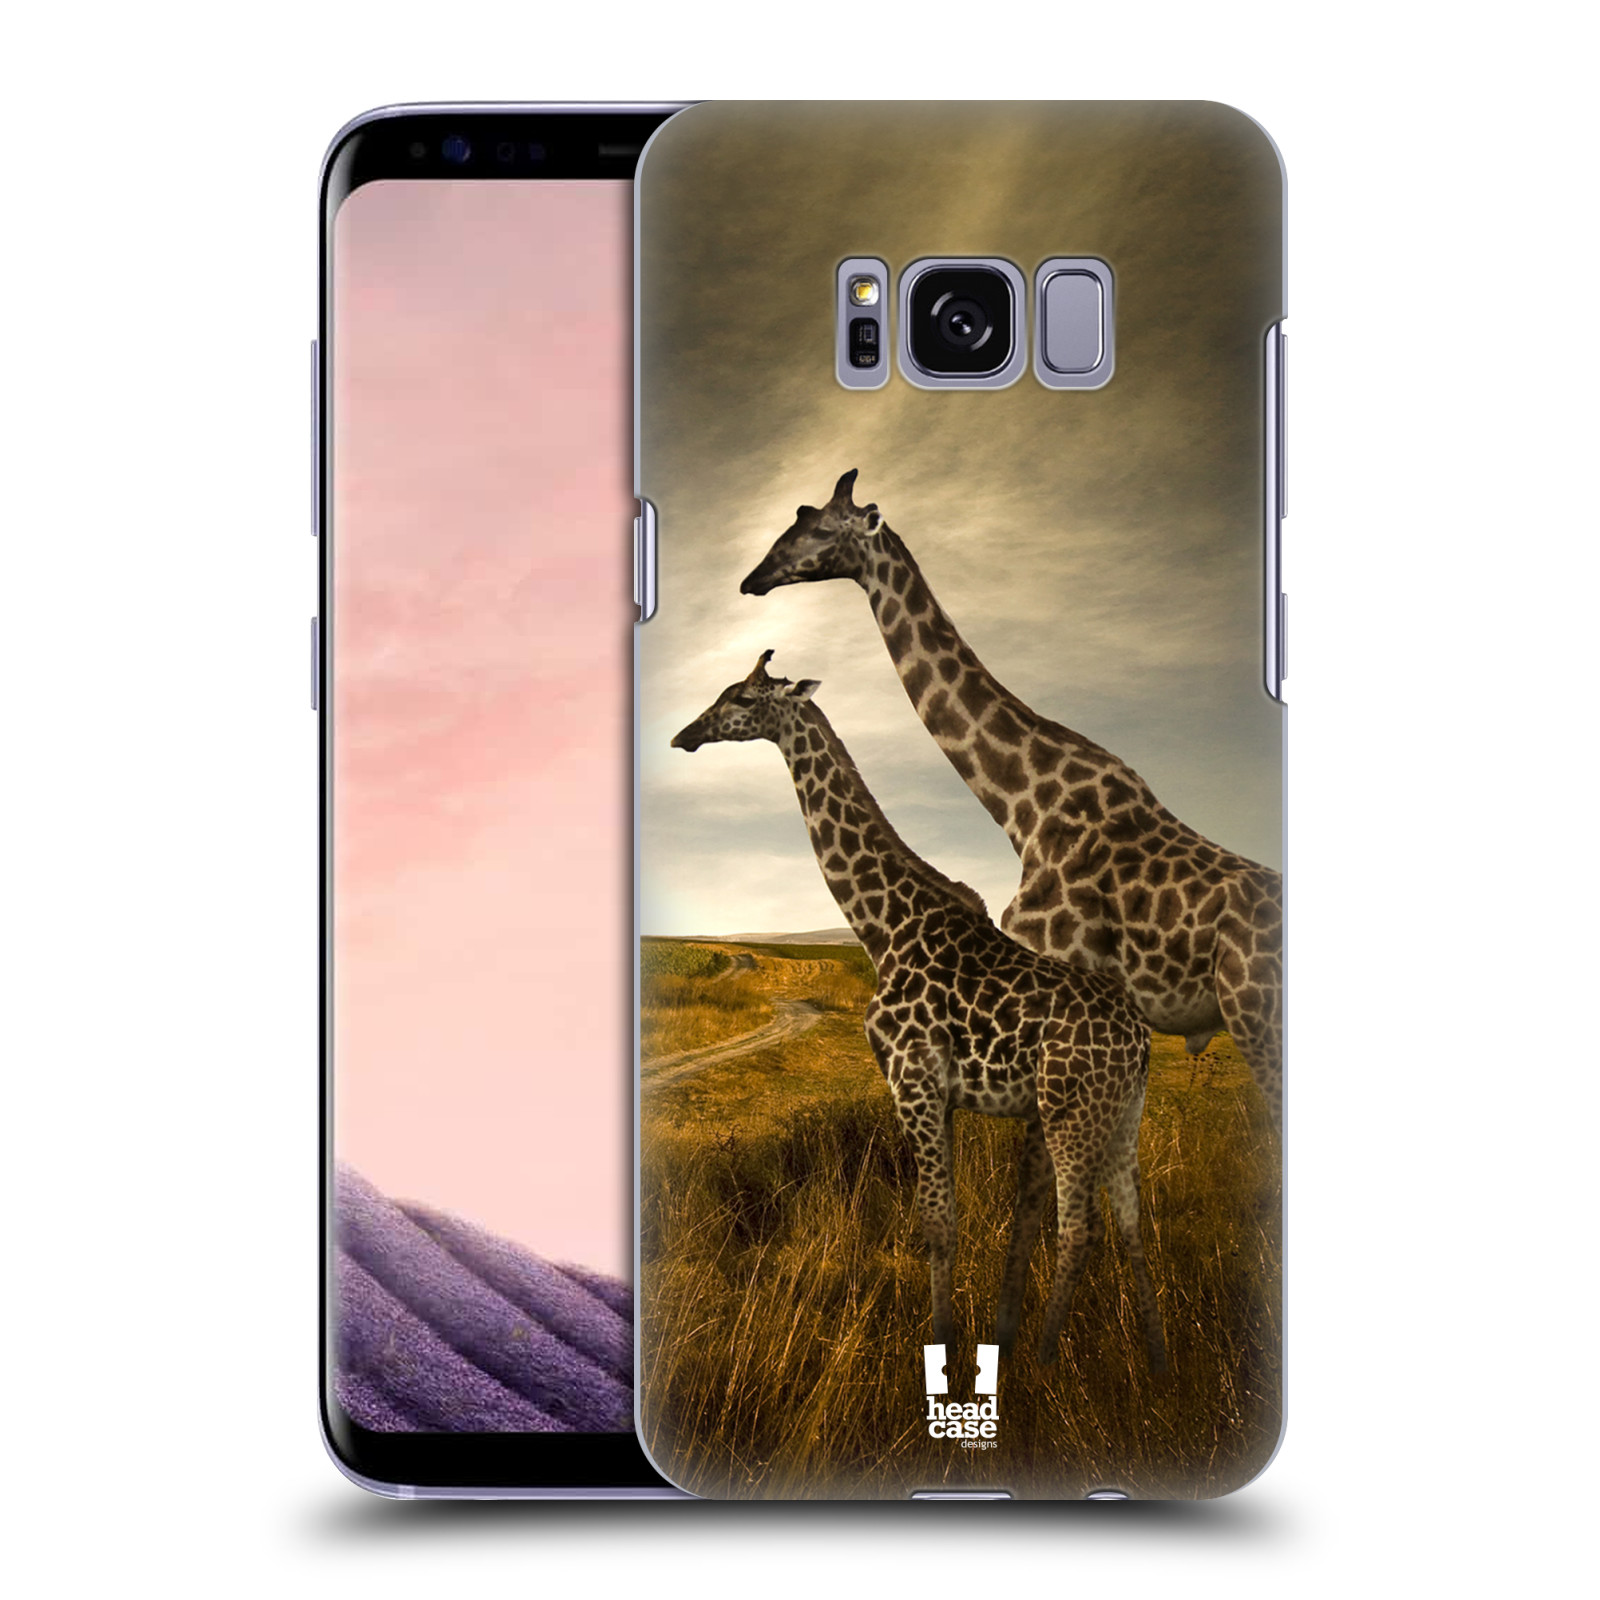 Zadní obal pro mobil Samsung Galaxy S8 - HEAD CASE - Svět zvířat žirafy